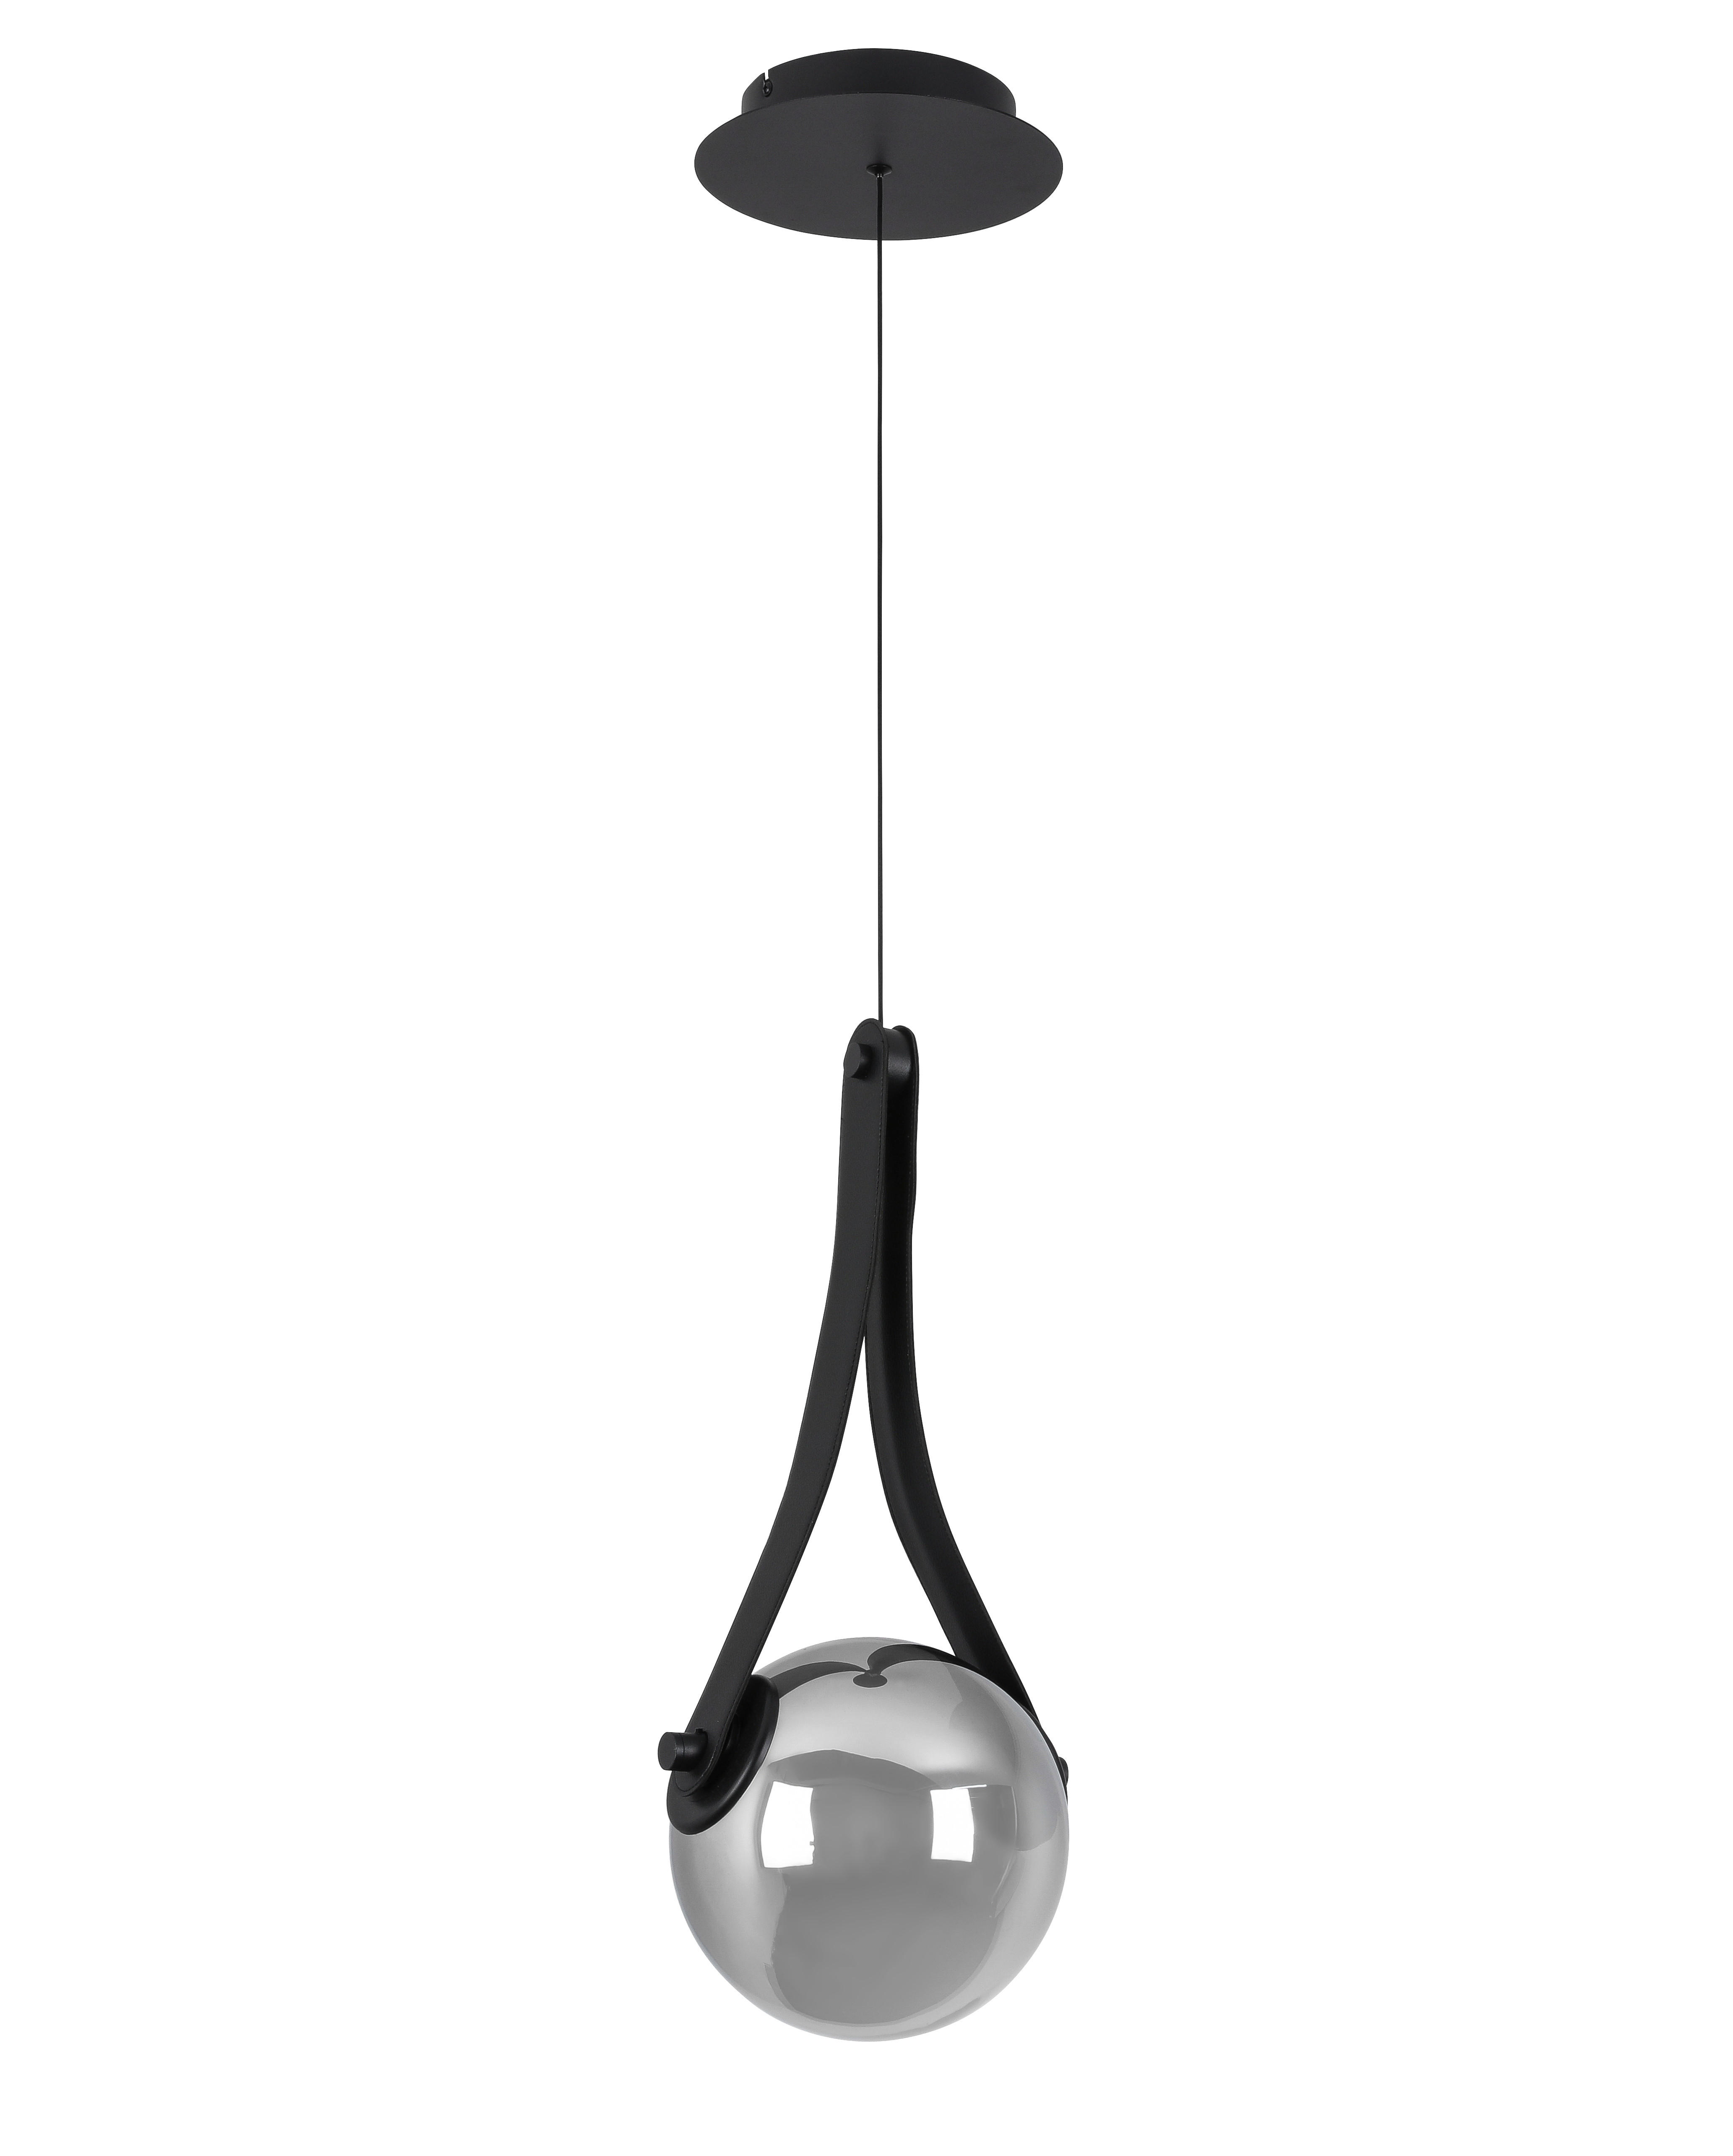 Dieter Knoll ZÁVĚSNÉ LED SVÍTIDLO, 23/215 cm - černá,barvy chromu